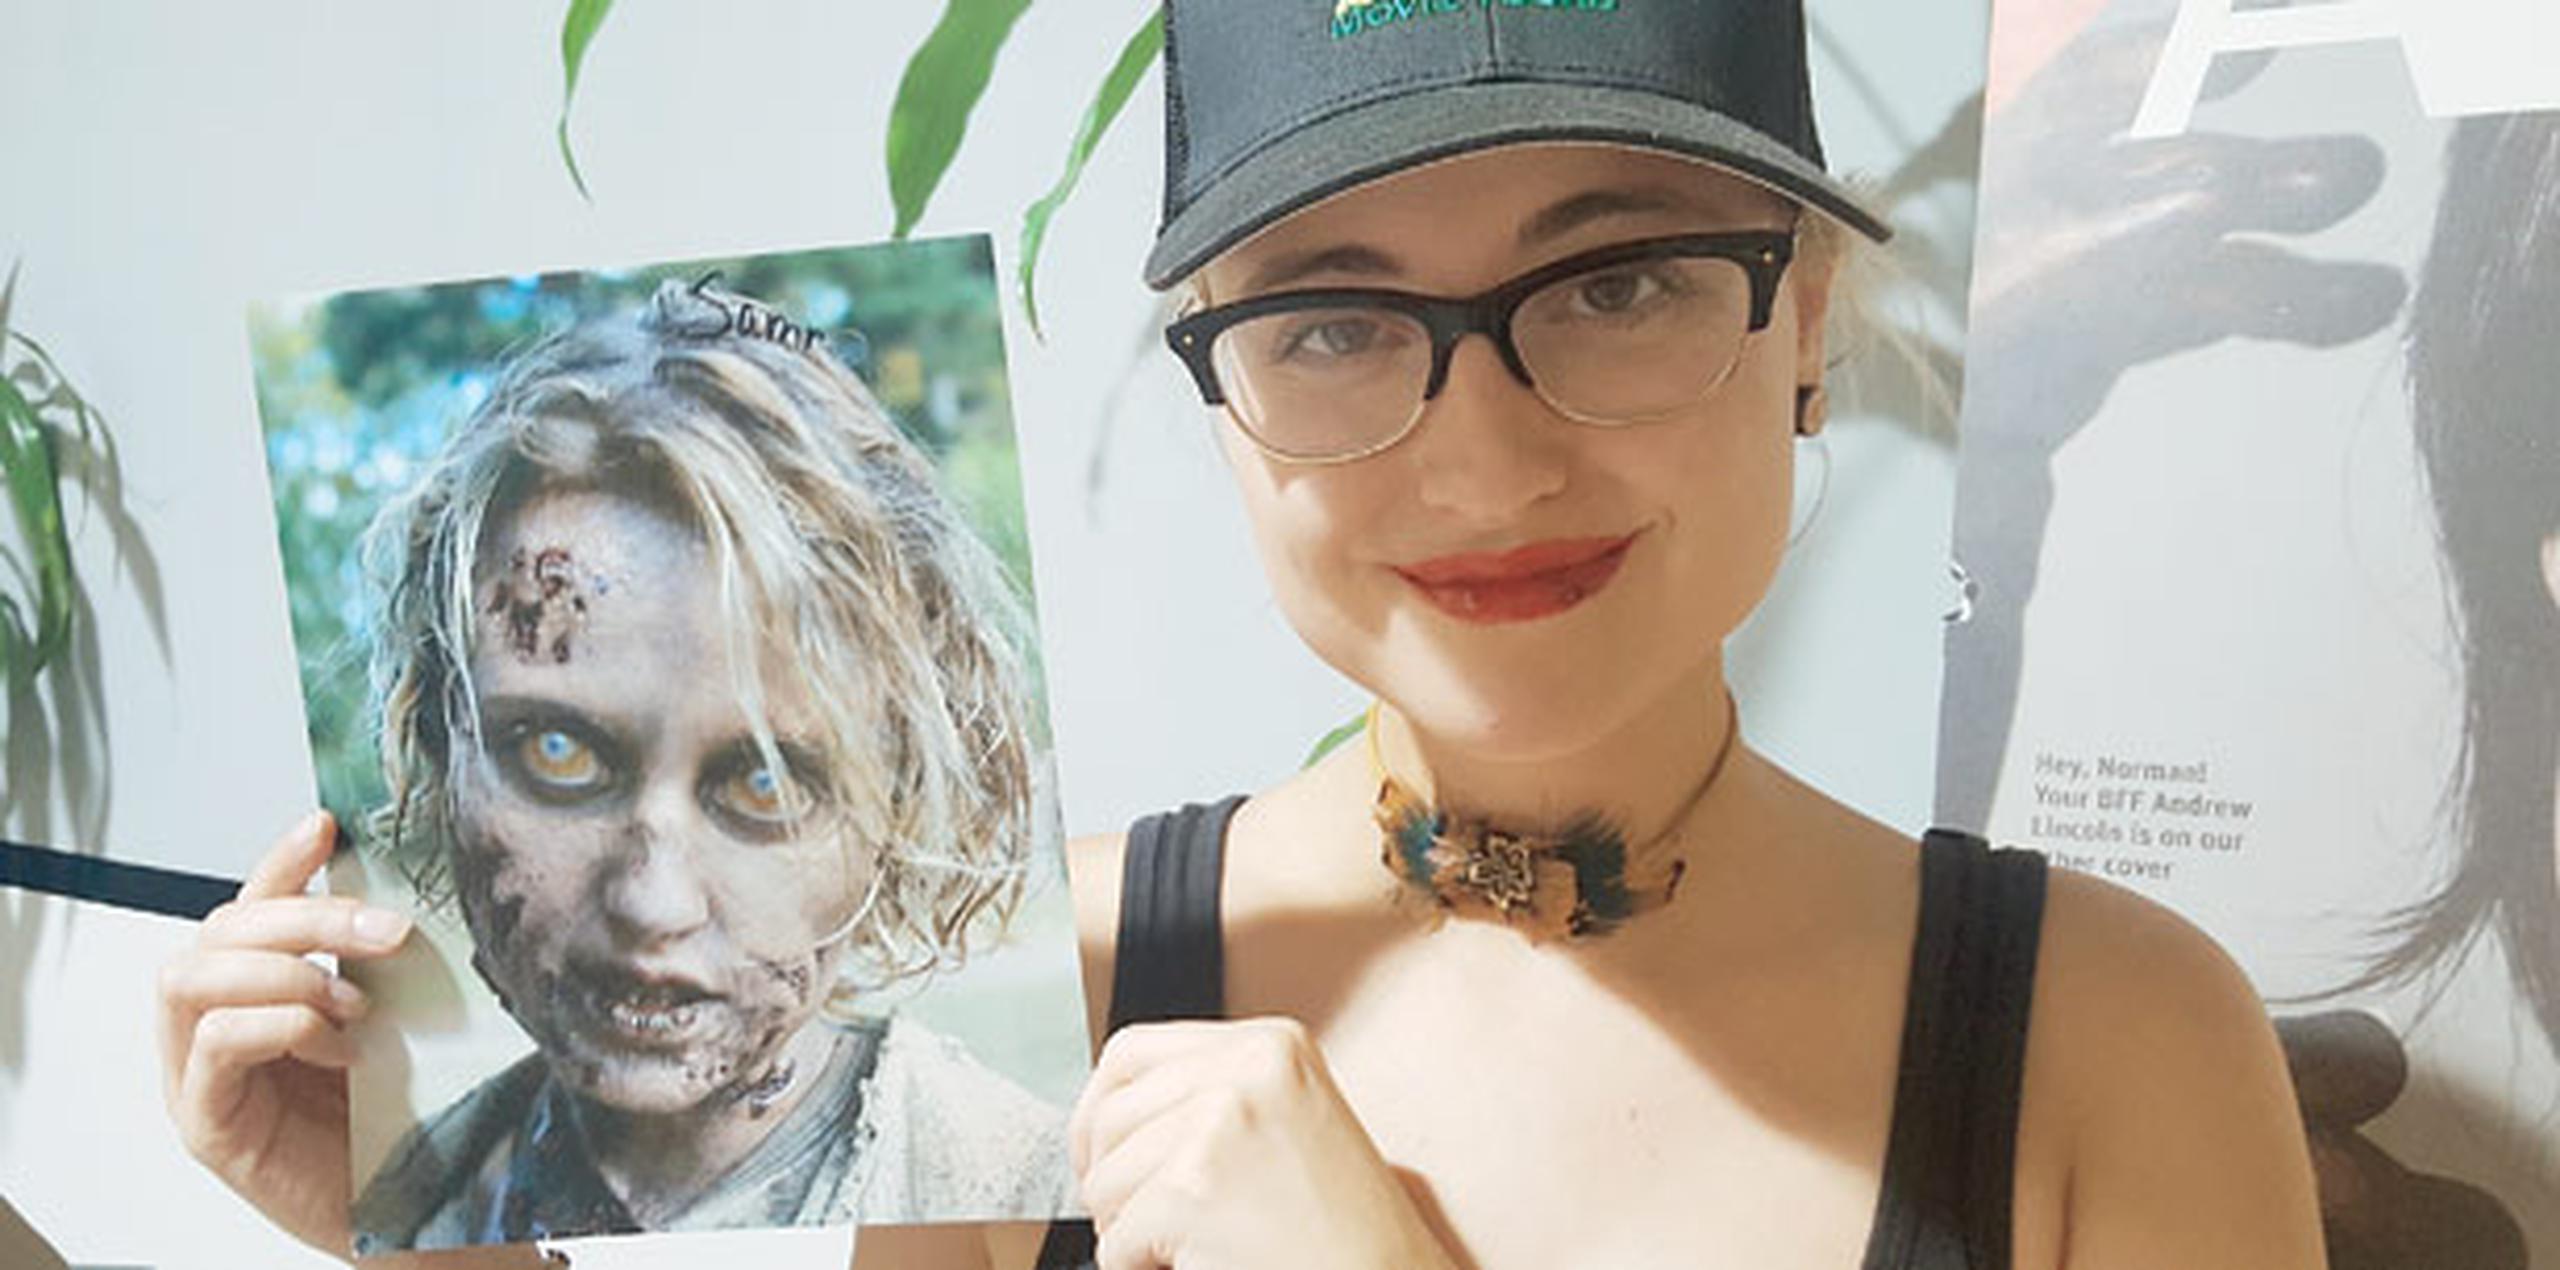 Lo más incómodo de encarnar a un zombi en la serie, según la actriz, “es llevar los lentes de contacto, porque no ves absolutamente nada con ellos”, compartió. (melba.brugueras@primerahora.com)